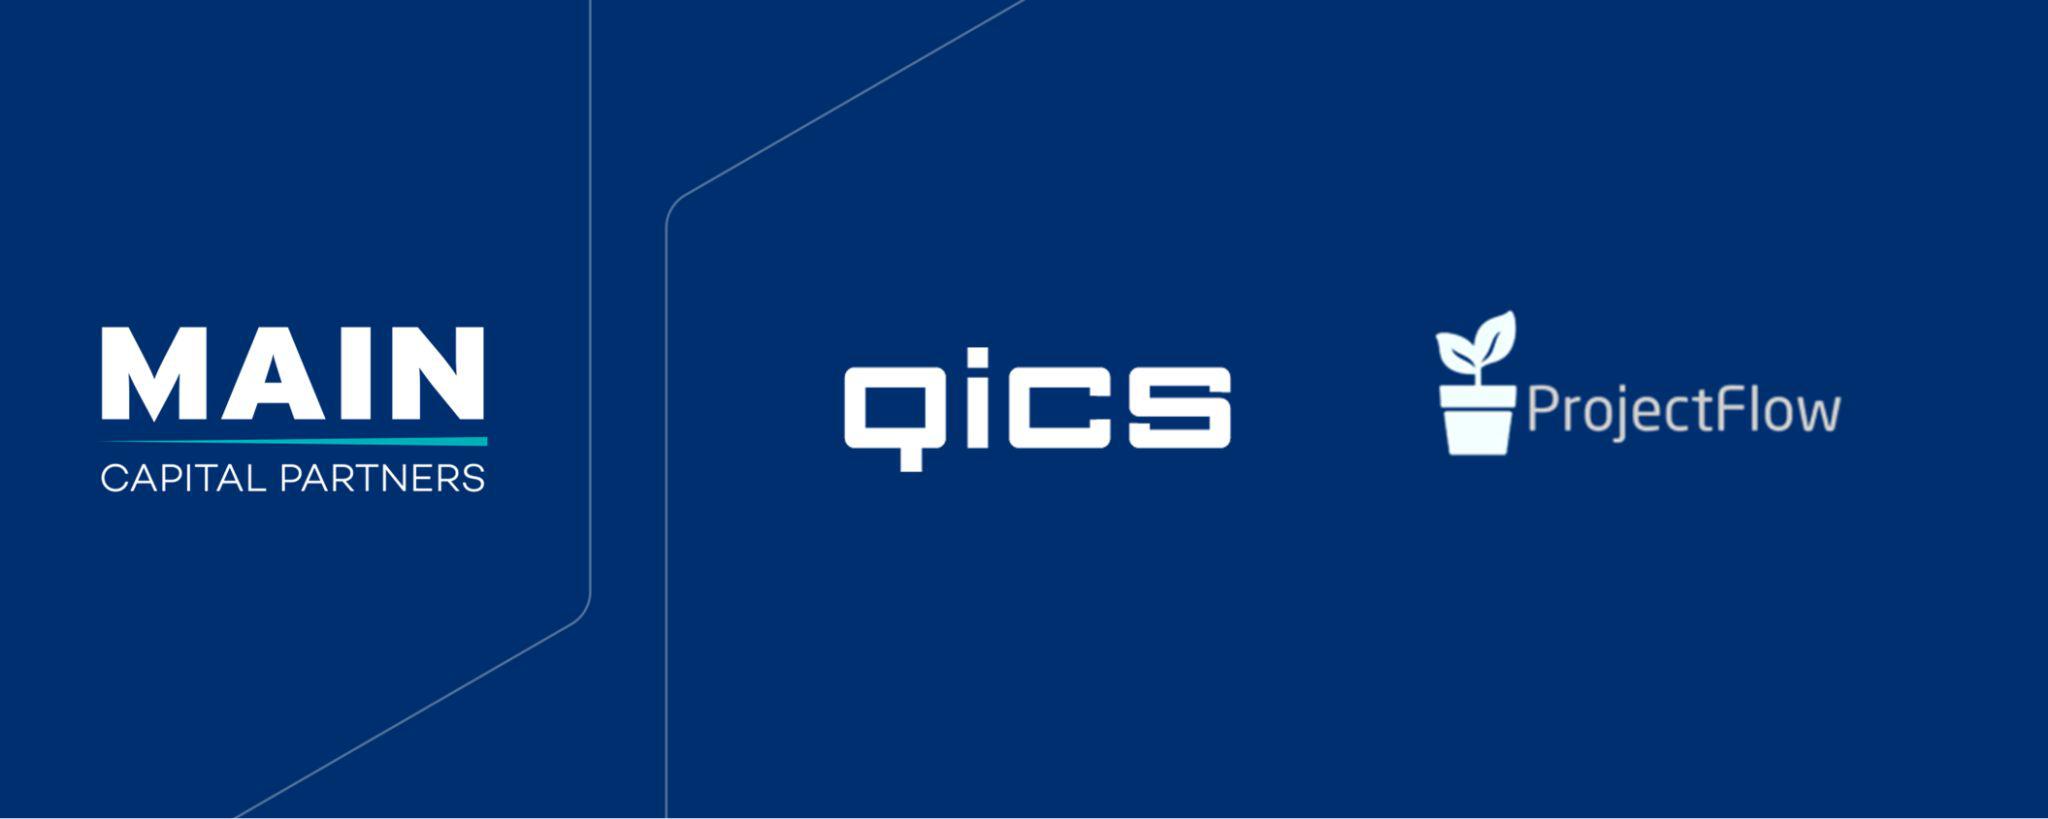 Nyheden 'Qics udvider til det skandinaviske marked med opk&oslash;bet af den danske virksomhed Projectflow' 